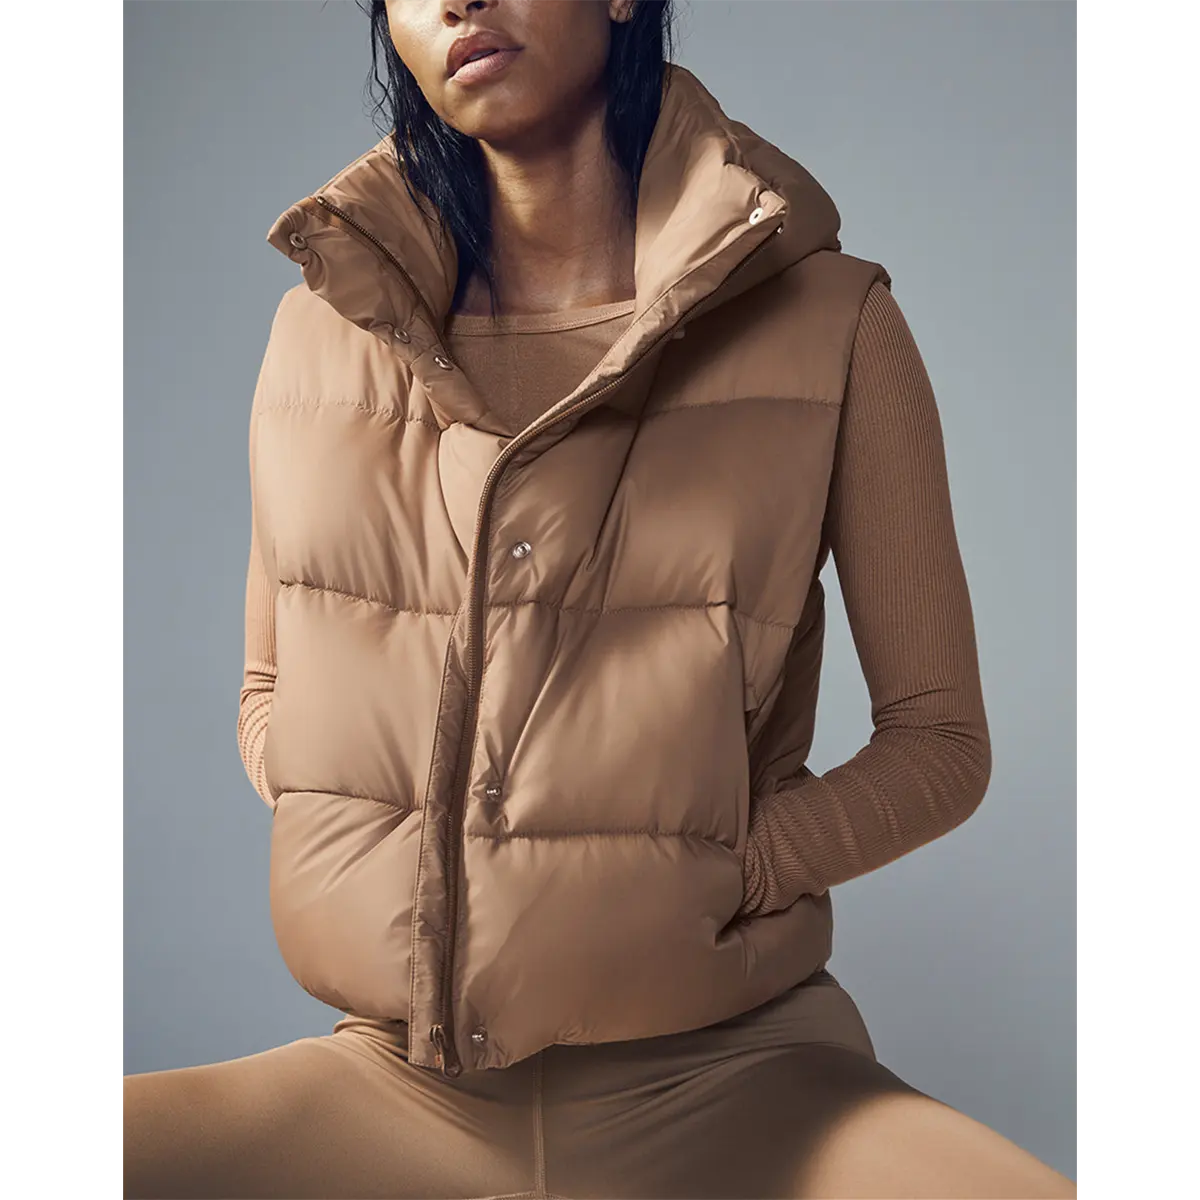 Chaleco acolchado de invierno personalizado de alta calidad para mujer, chaqueta sin mangas acolchada informal, chaleco con capucha de plumón de pato, abrigo